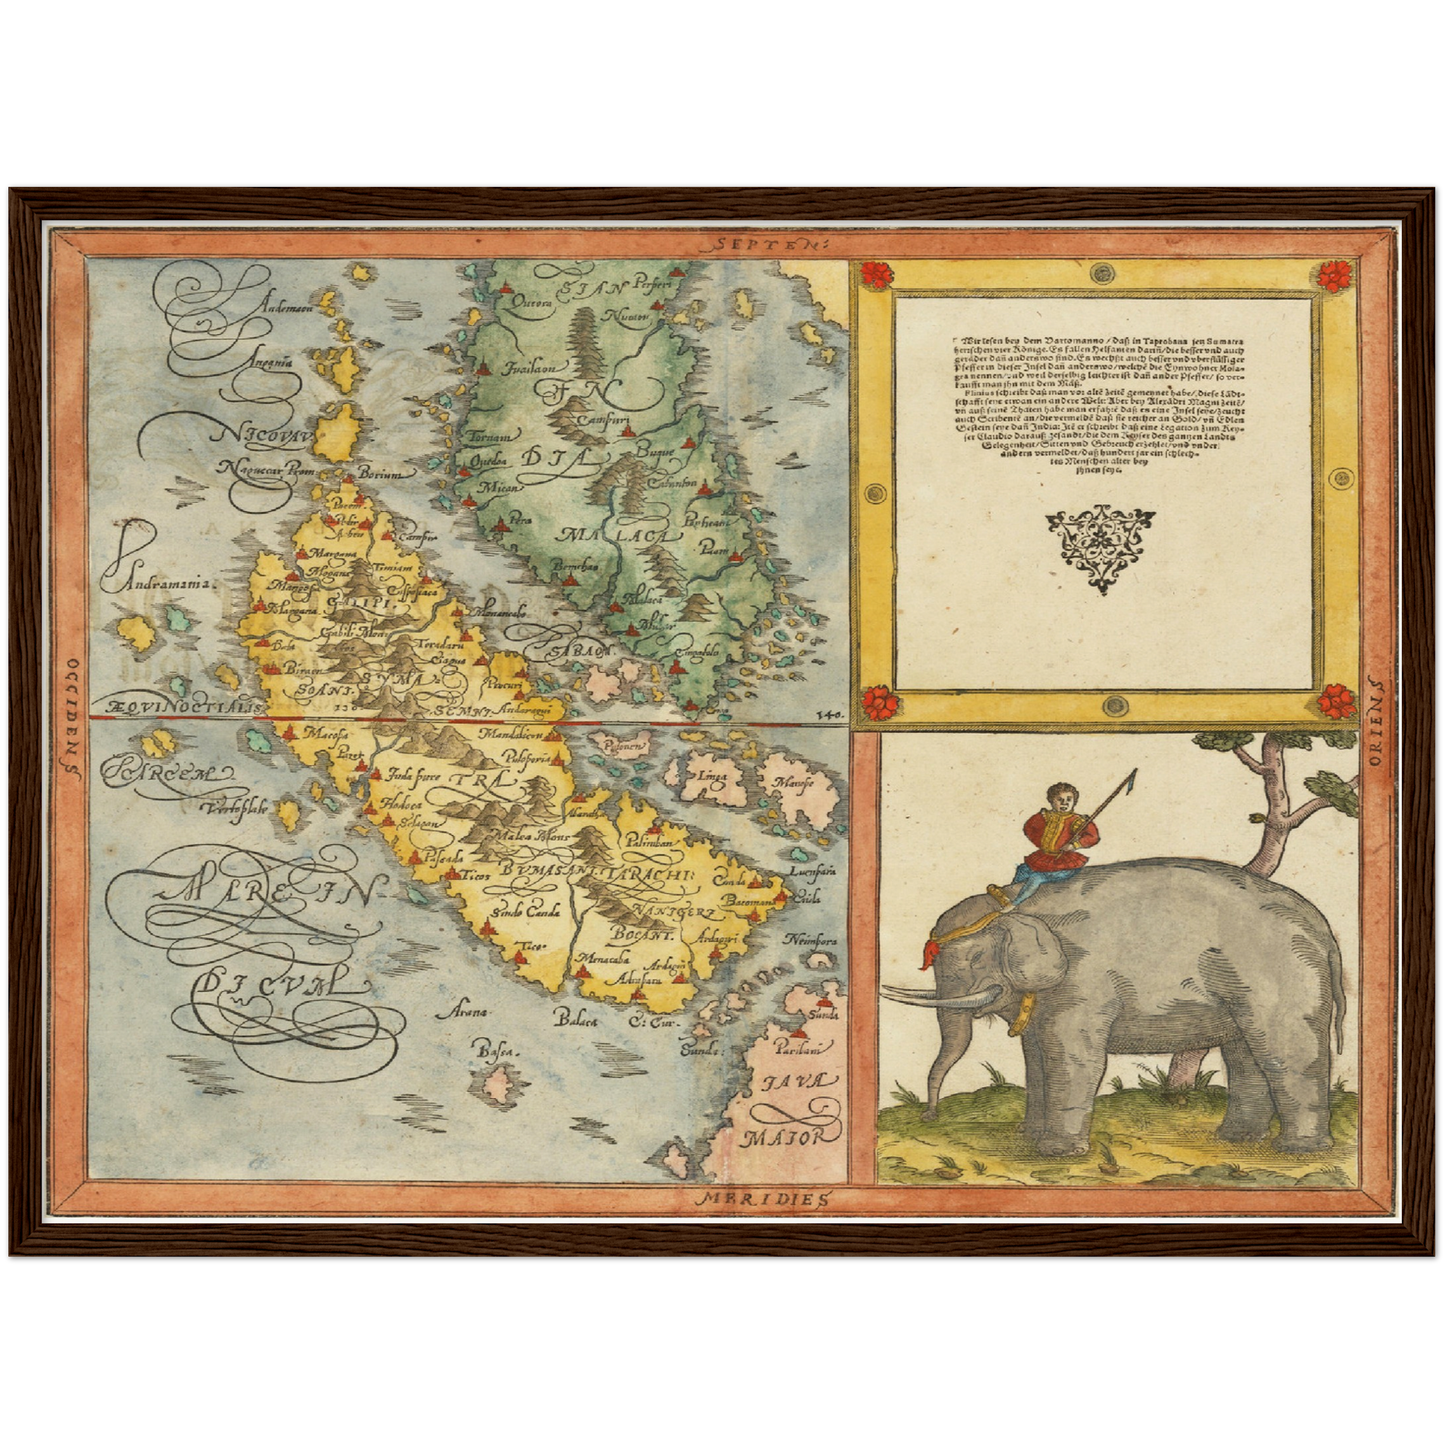 Historische Landkarte Singapur um 1580